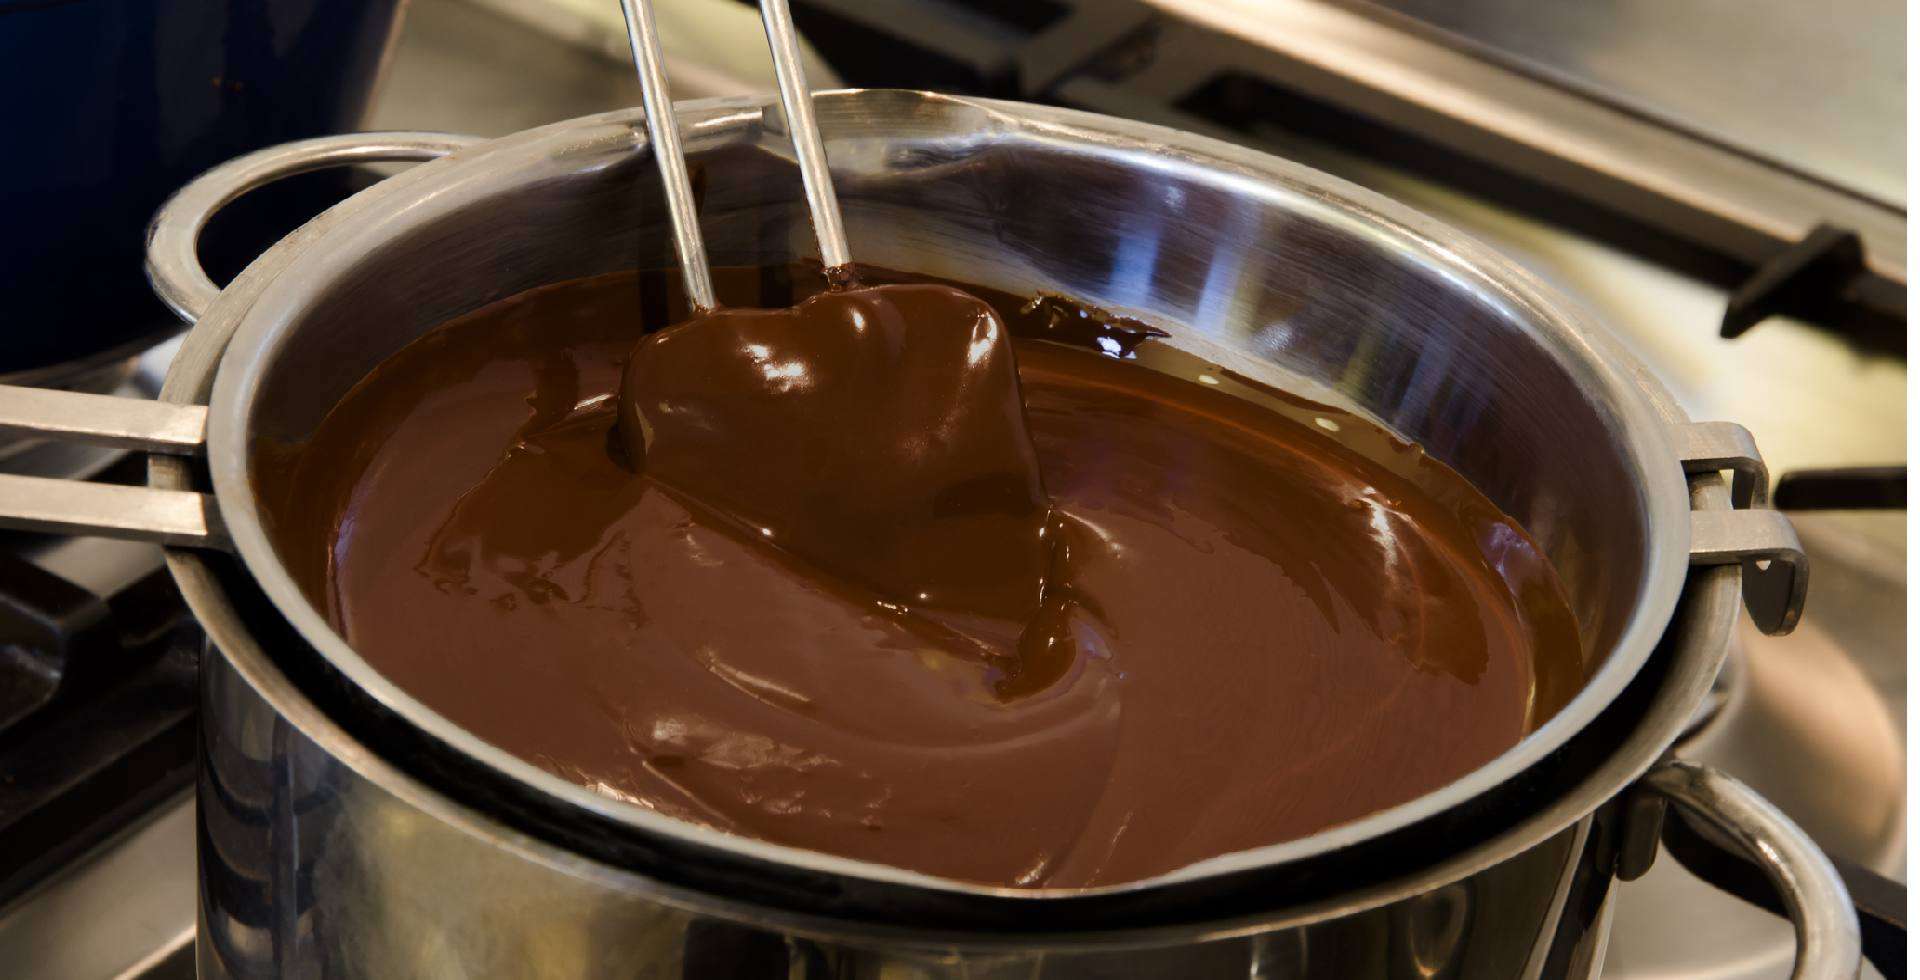 Chocolate derretendo em banho maria